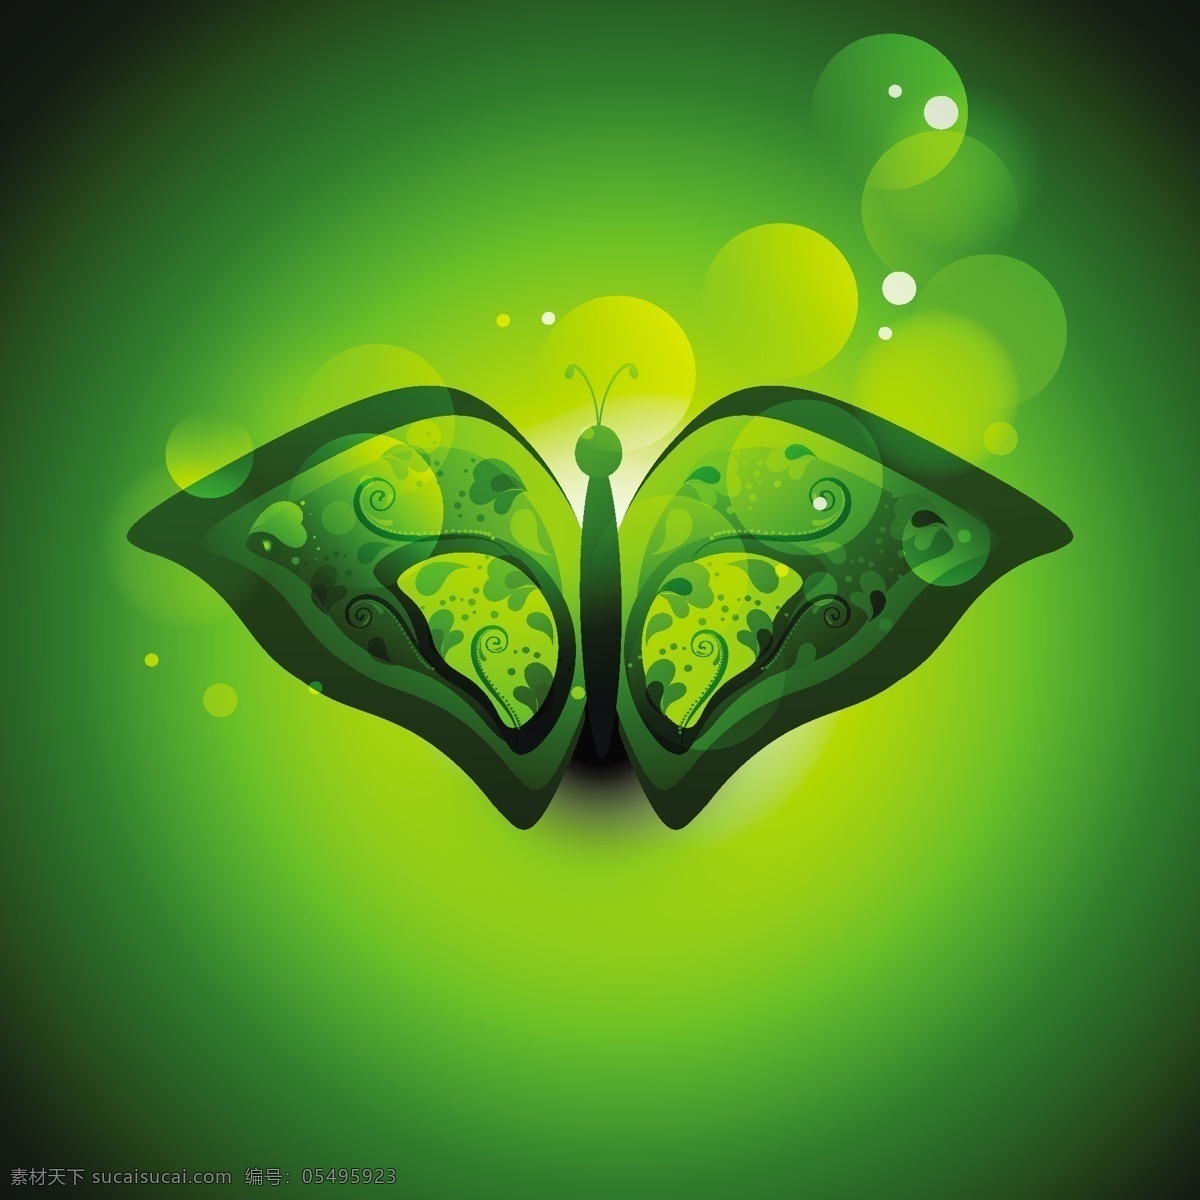 碟 形 背景 虚化 绿色 抽象 花 卡片 蝴蝶 动物 花卉的背景 绿色的背景 壁纸 背景虚化 界 现代 背景的绿色 昆虫 美丽的 现代的背景 圈背景 闪亮